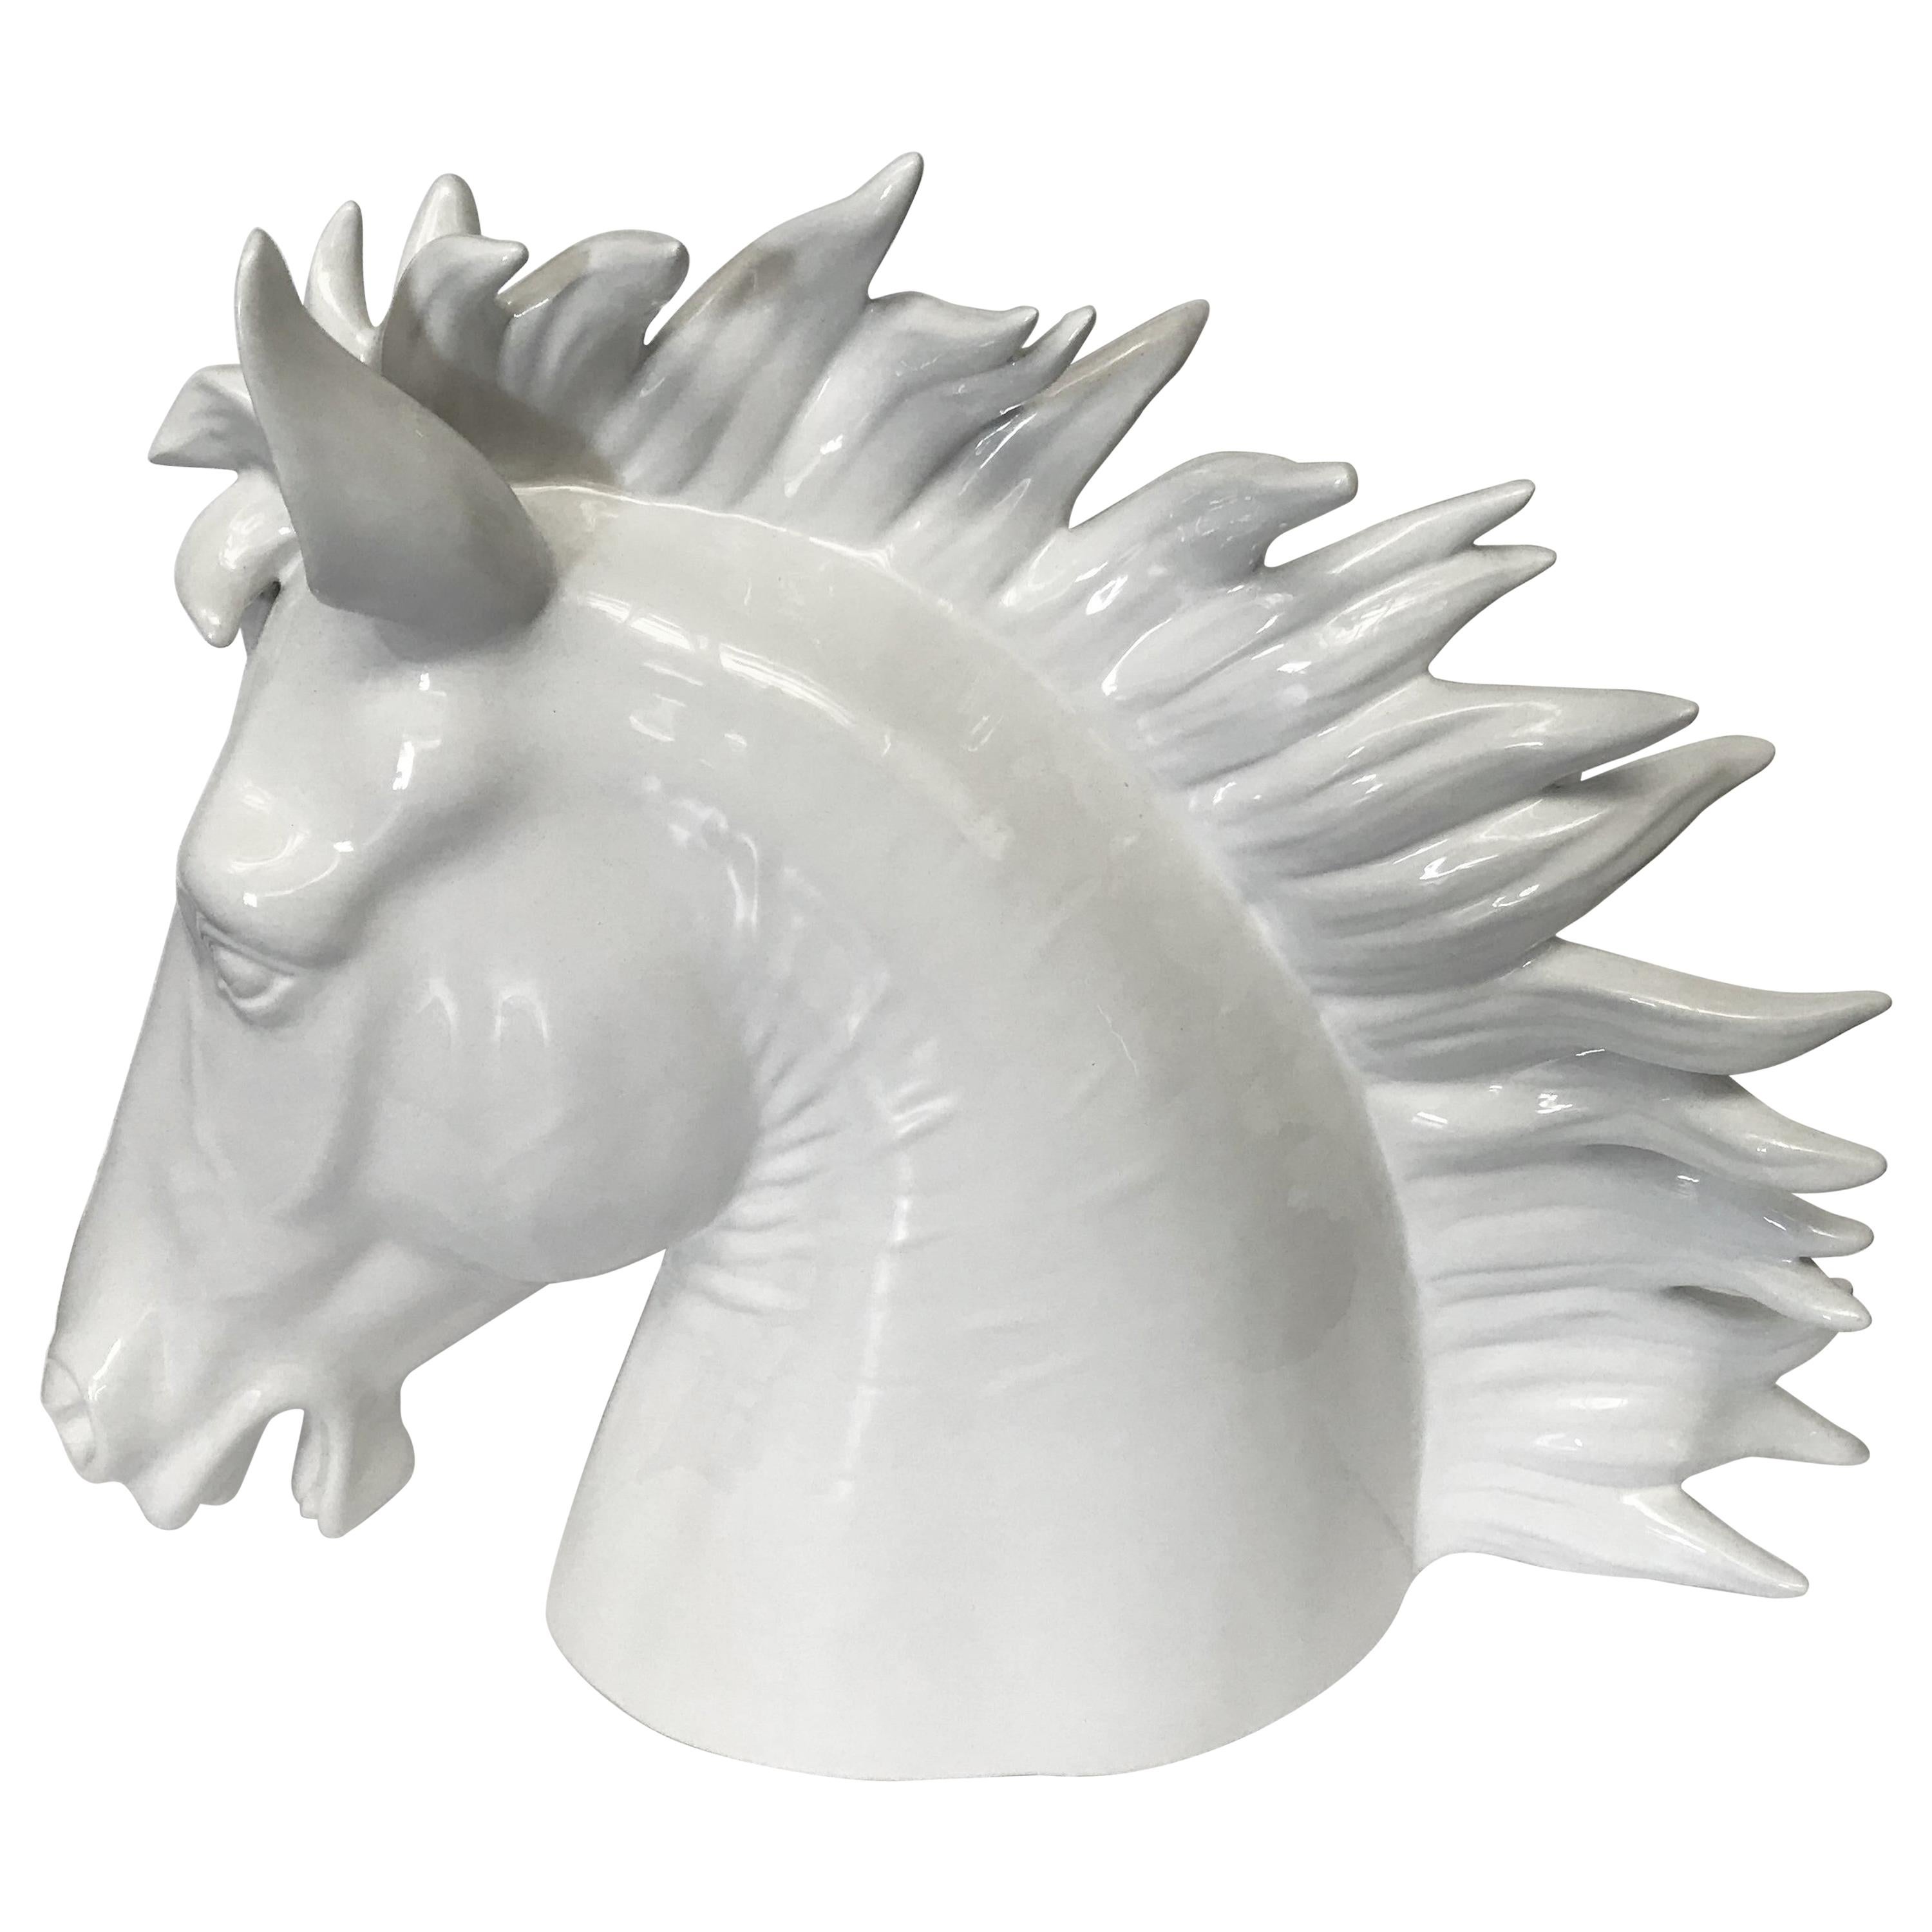 White Ceramic Horse Sculpture by Fabio Ltd